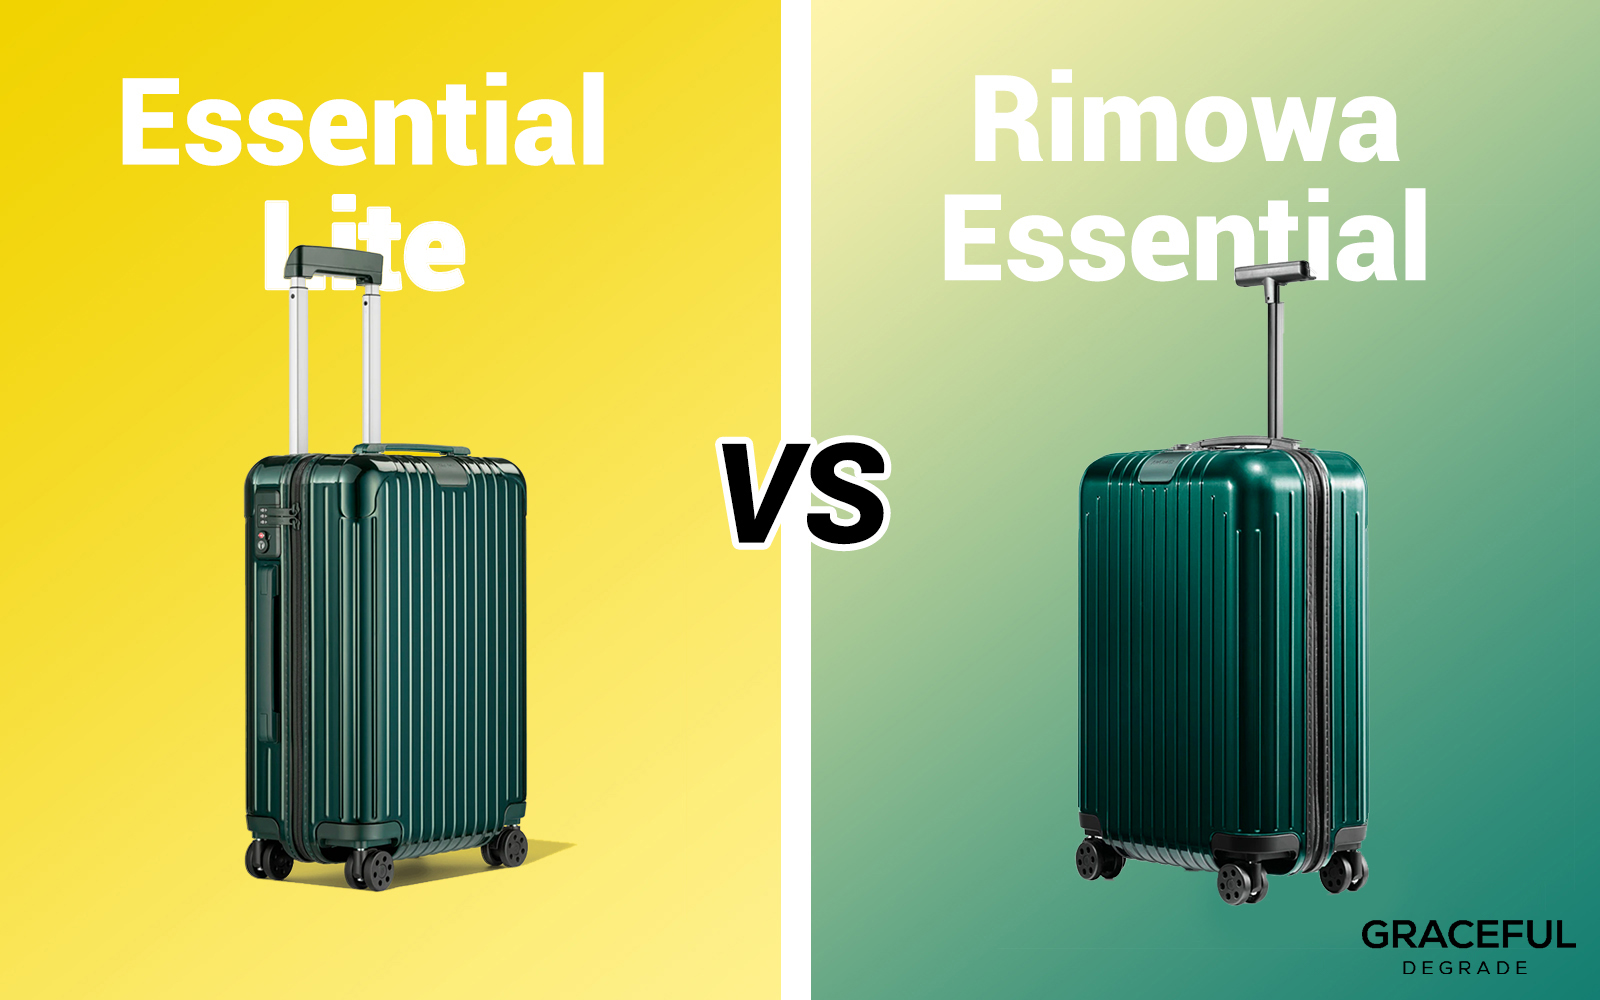 Rimowa Essential Cabin VS Cabin S - Glossy VS Matte, Size and